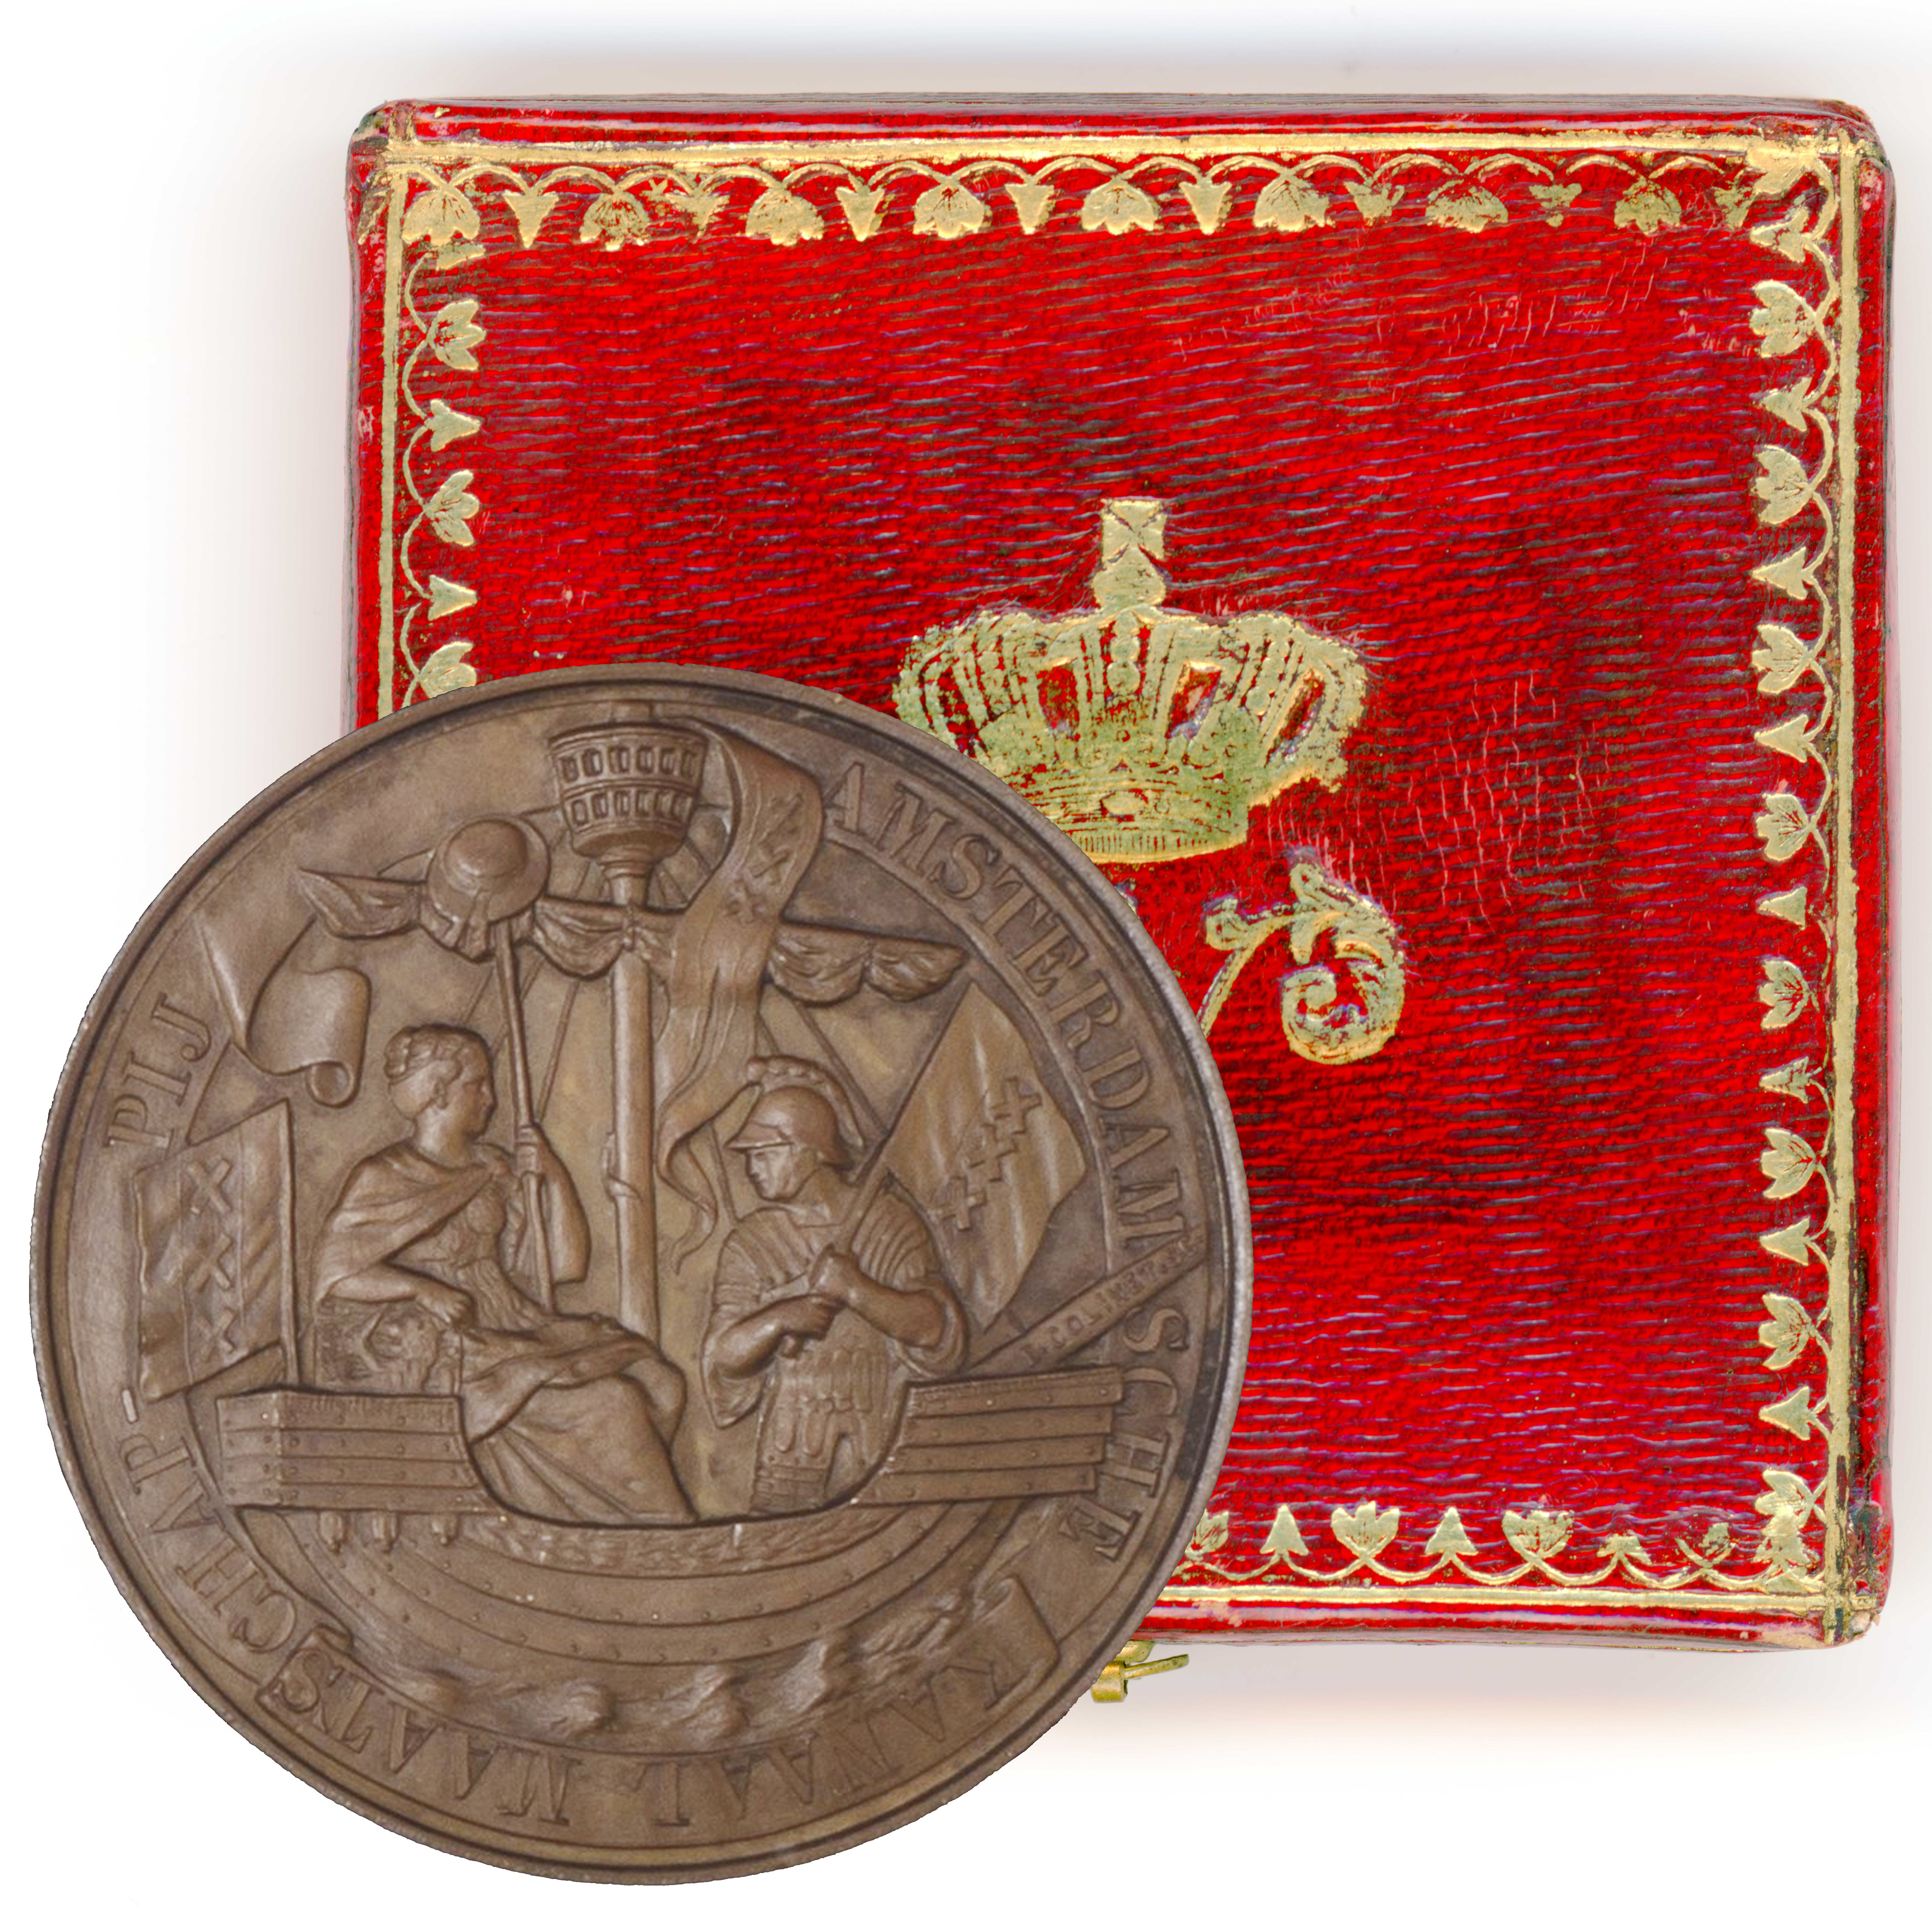 Pays Bas - Guillaume III - Médaille en cuivre  revers